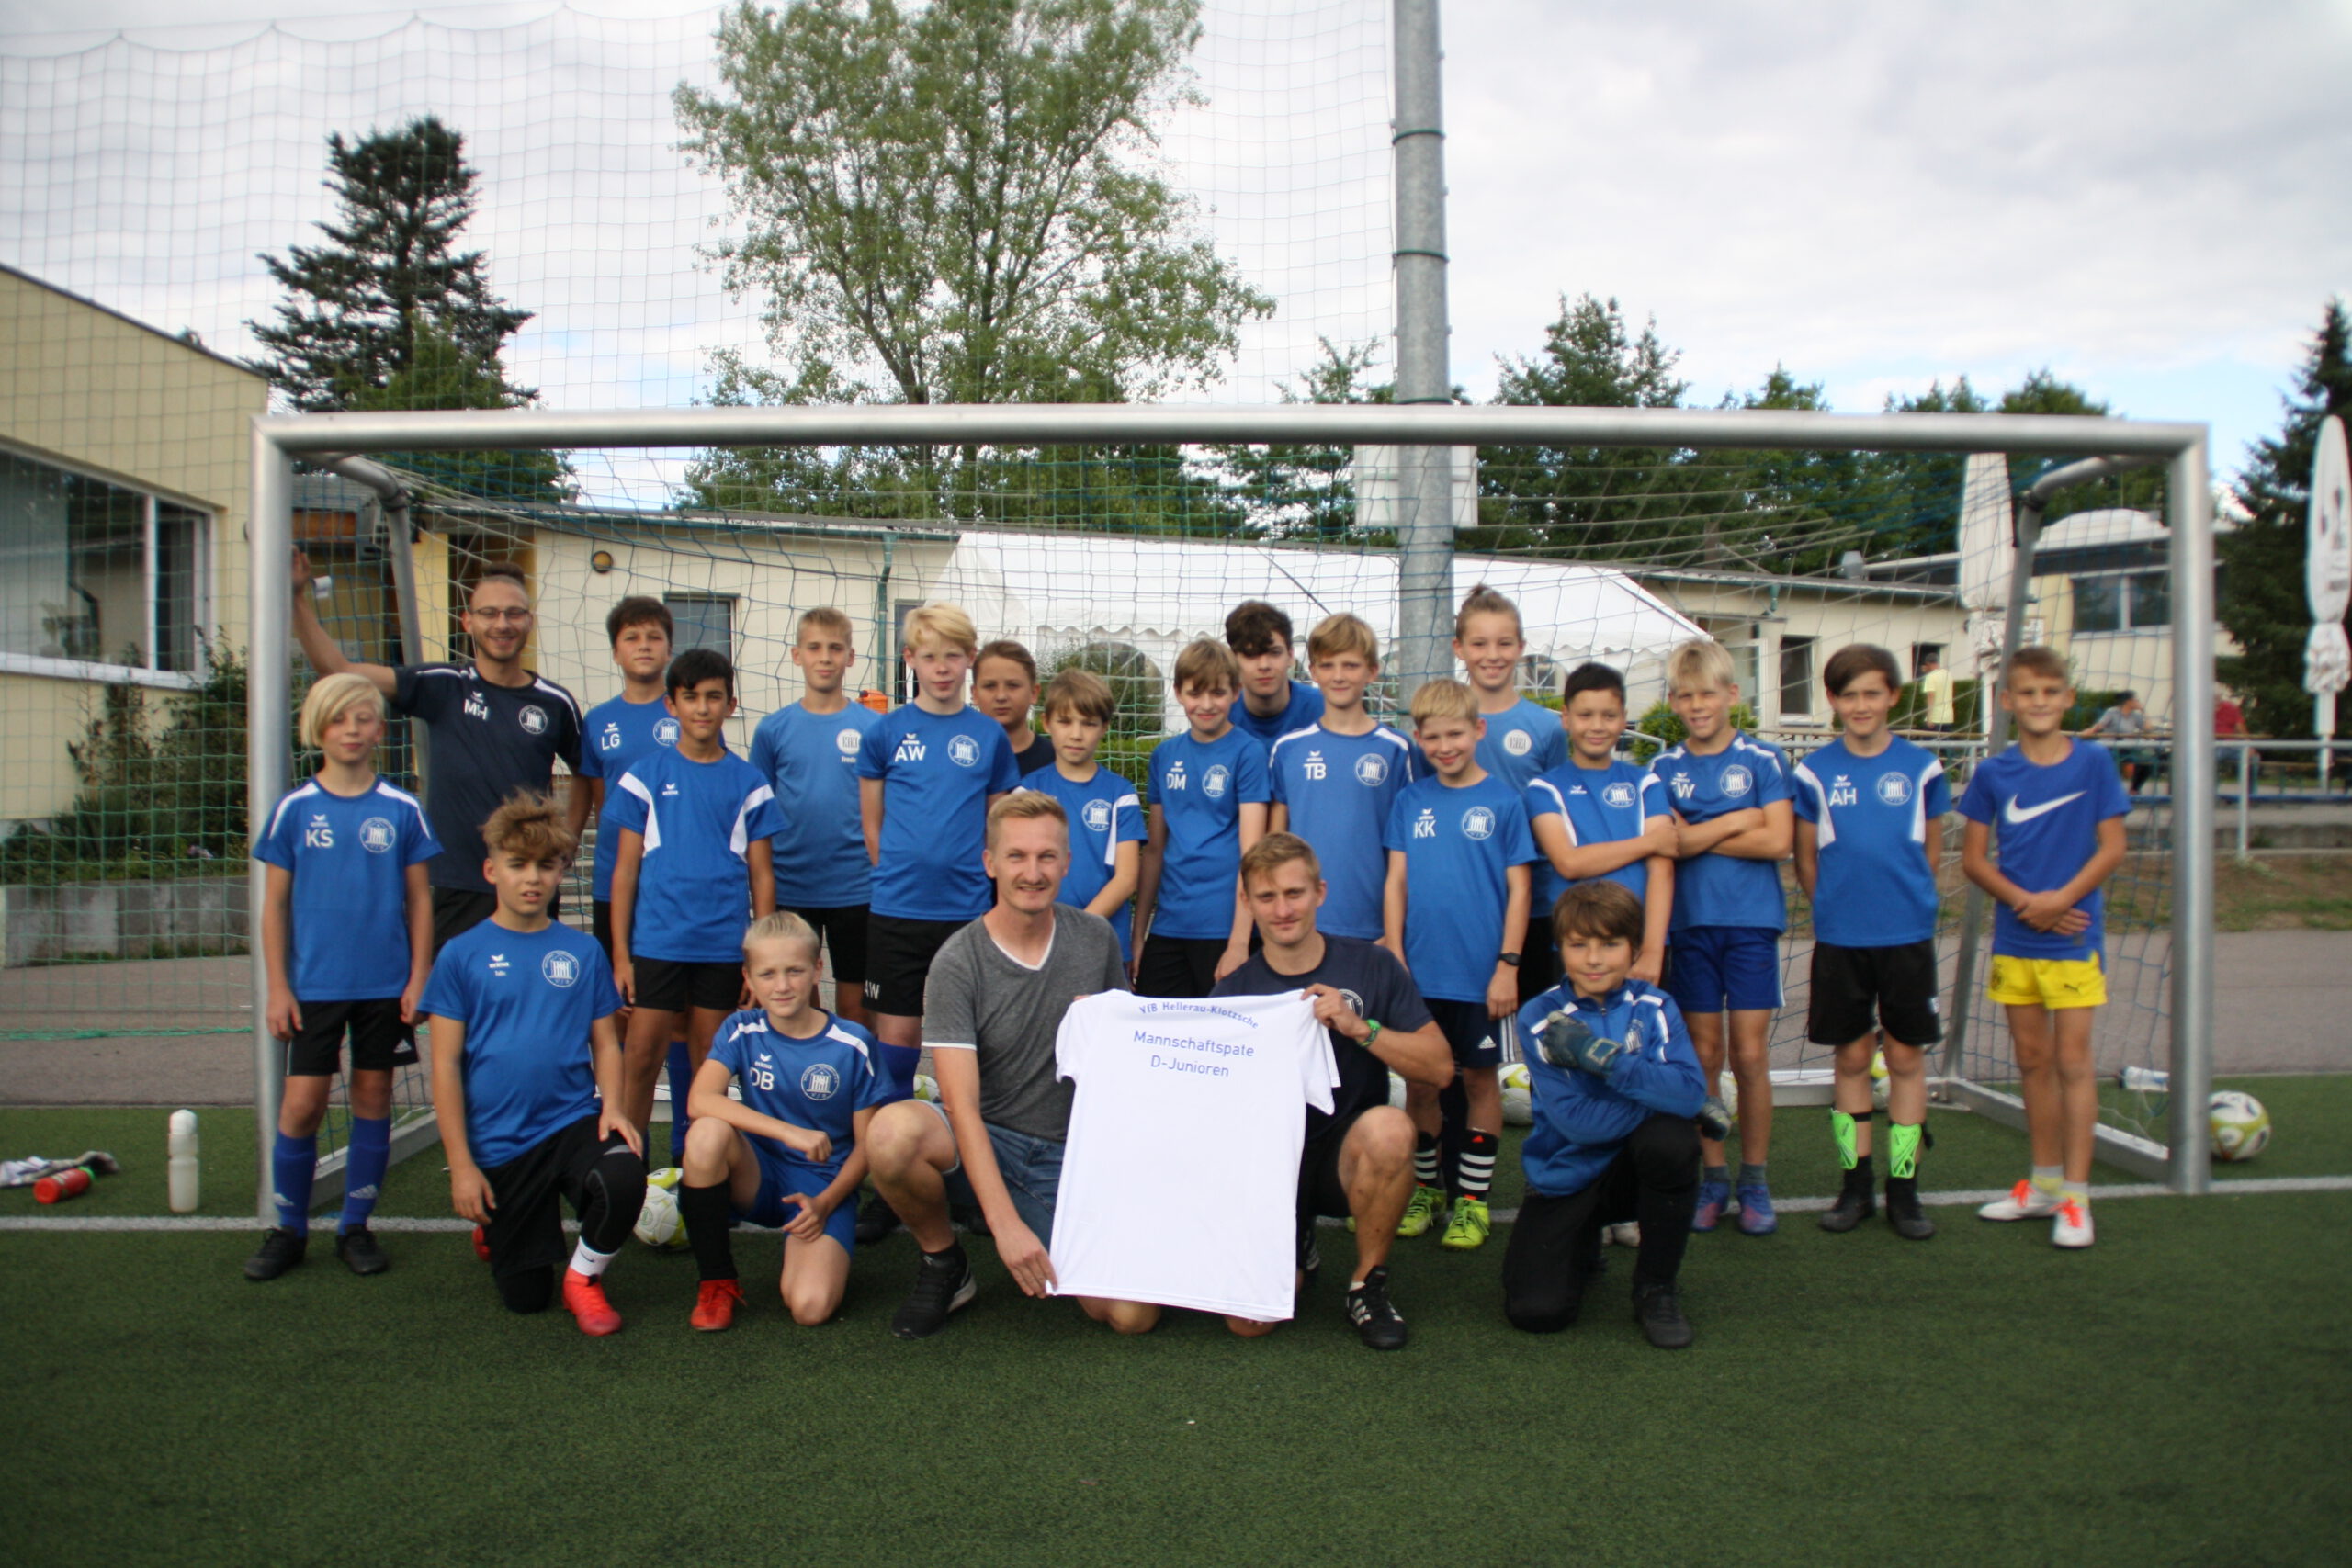 VfB Mannschaftspatenprogramm im Fußball wird auf D-Junioren ausgedehnt